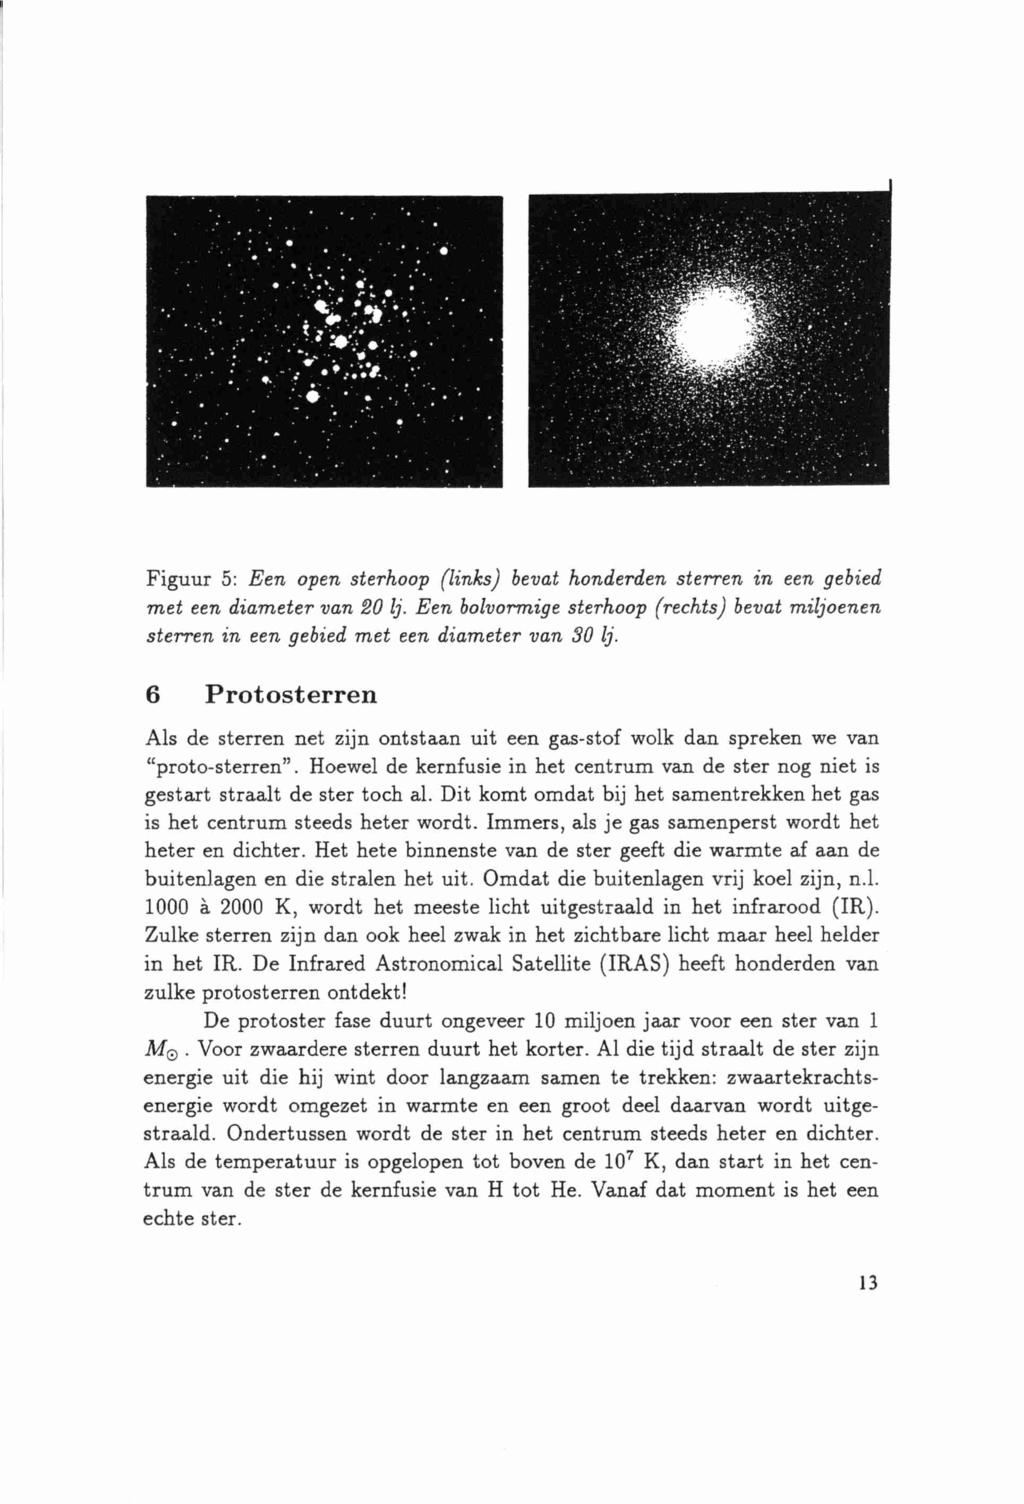 Figuur 5: Een open sterhoop (links) bevat honderden sterren in een gebied met een diameter van 20 lj. Een bolvormige sterhoop (rechts) bevat miljoenen sterren in een gebied met een diameter van 30 lj.